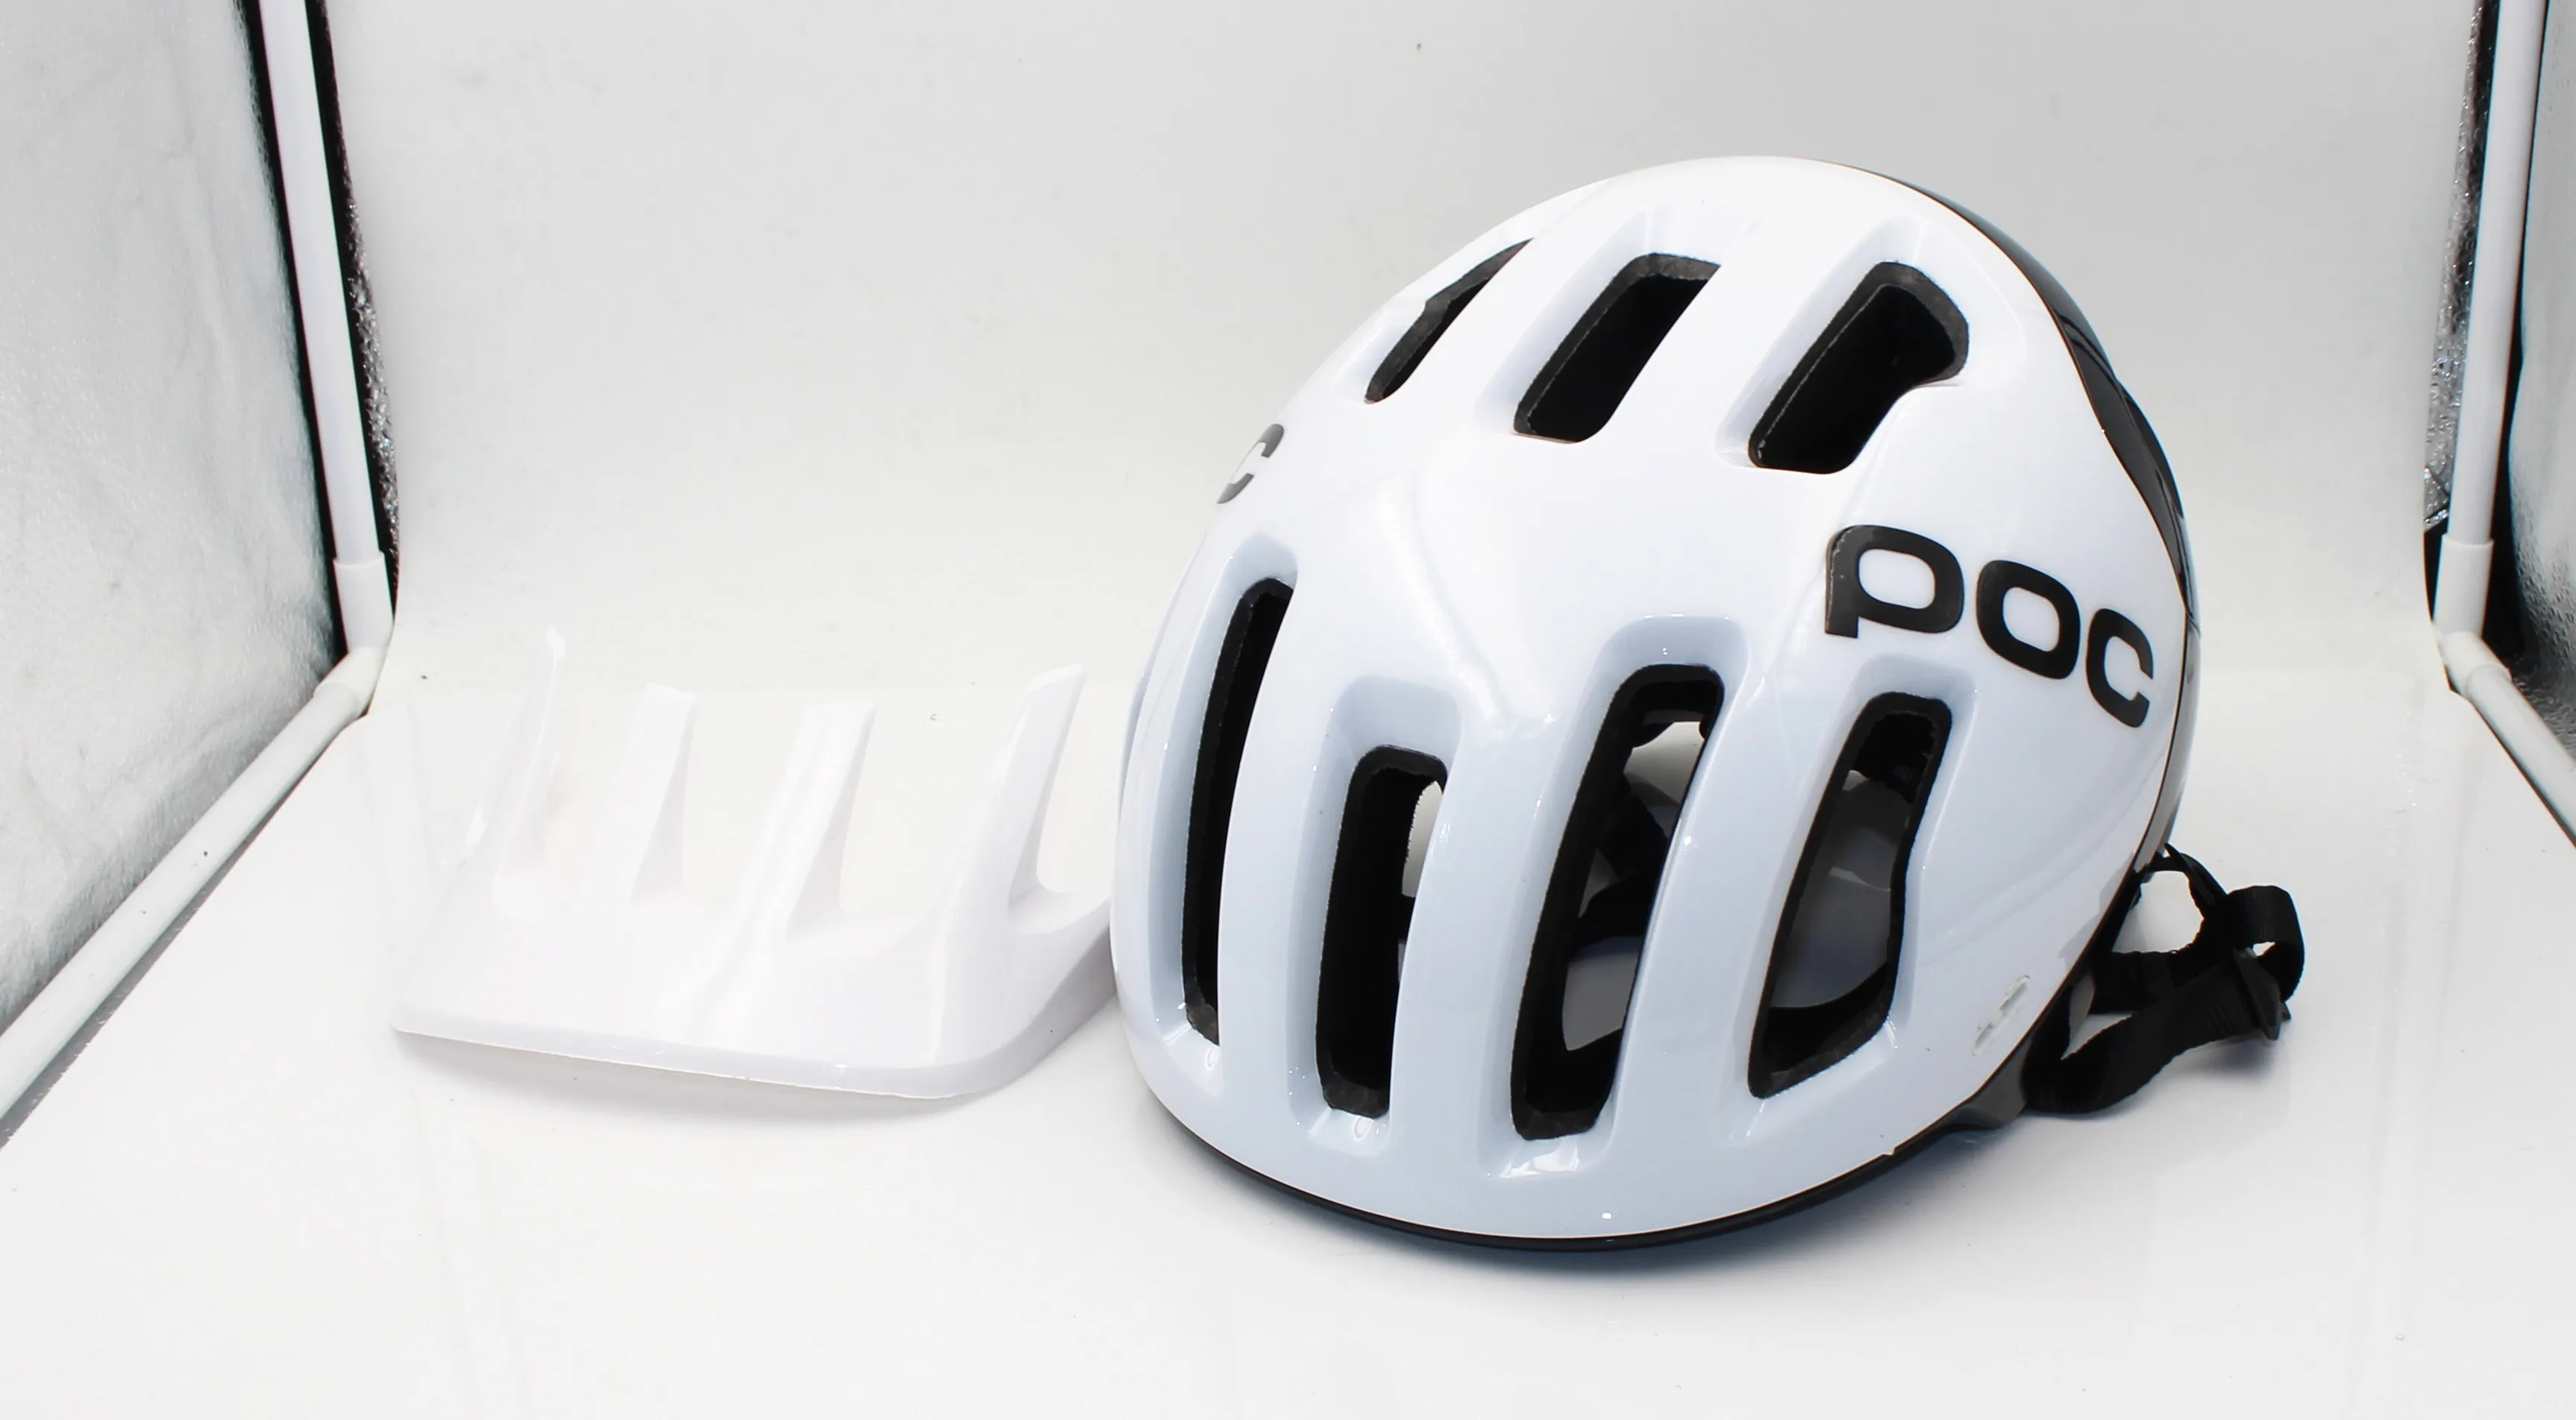 Шоссейный шлем для велоспорта Eps мужской женский сверхлегкий Mtb горный велосипед комфортный защитный велосипедный Размер M: 54-60